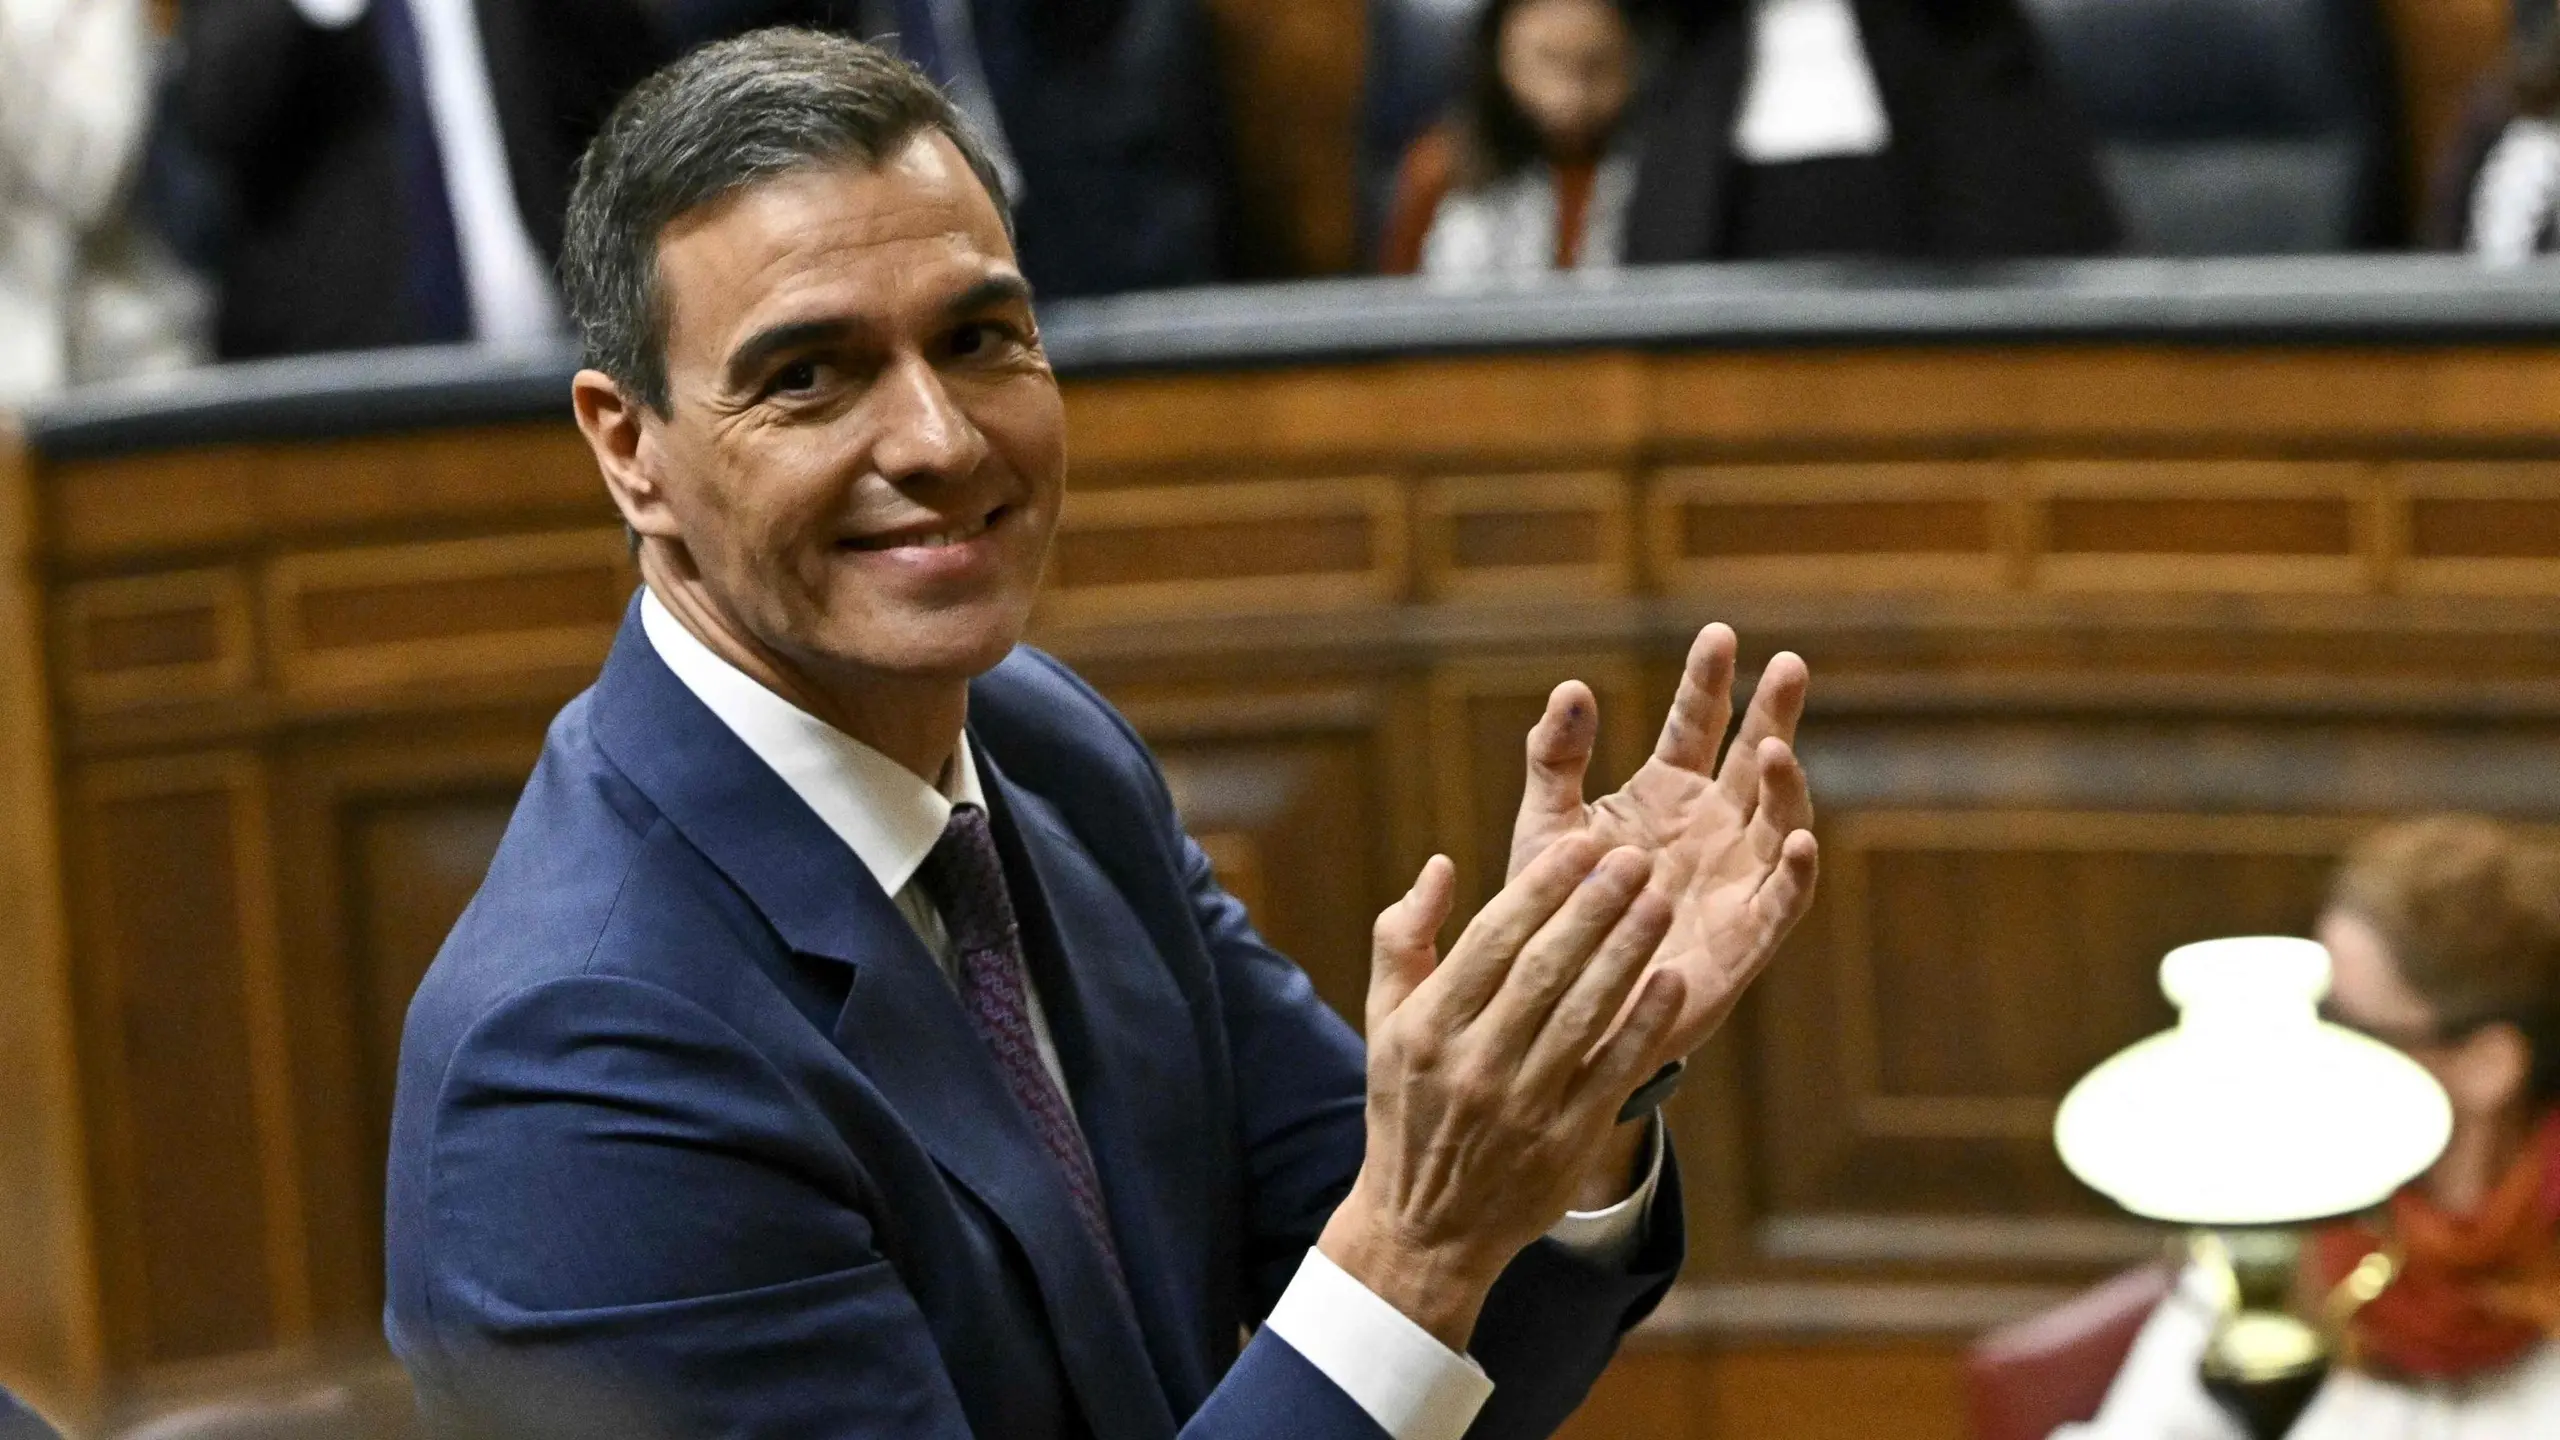 Pedro Sanchez ottiene la fiducia dal Parlamento spagnolo: la terza volta del leader socialista